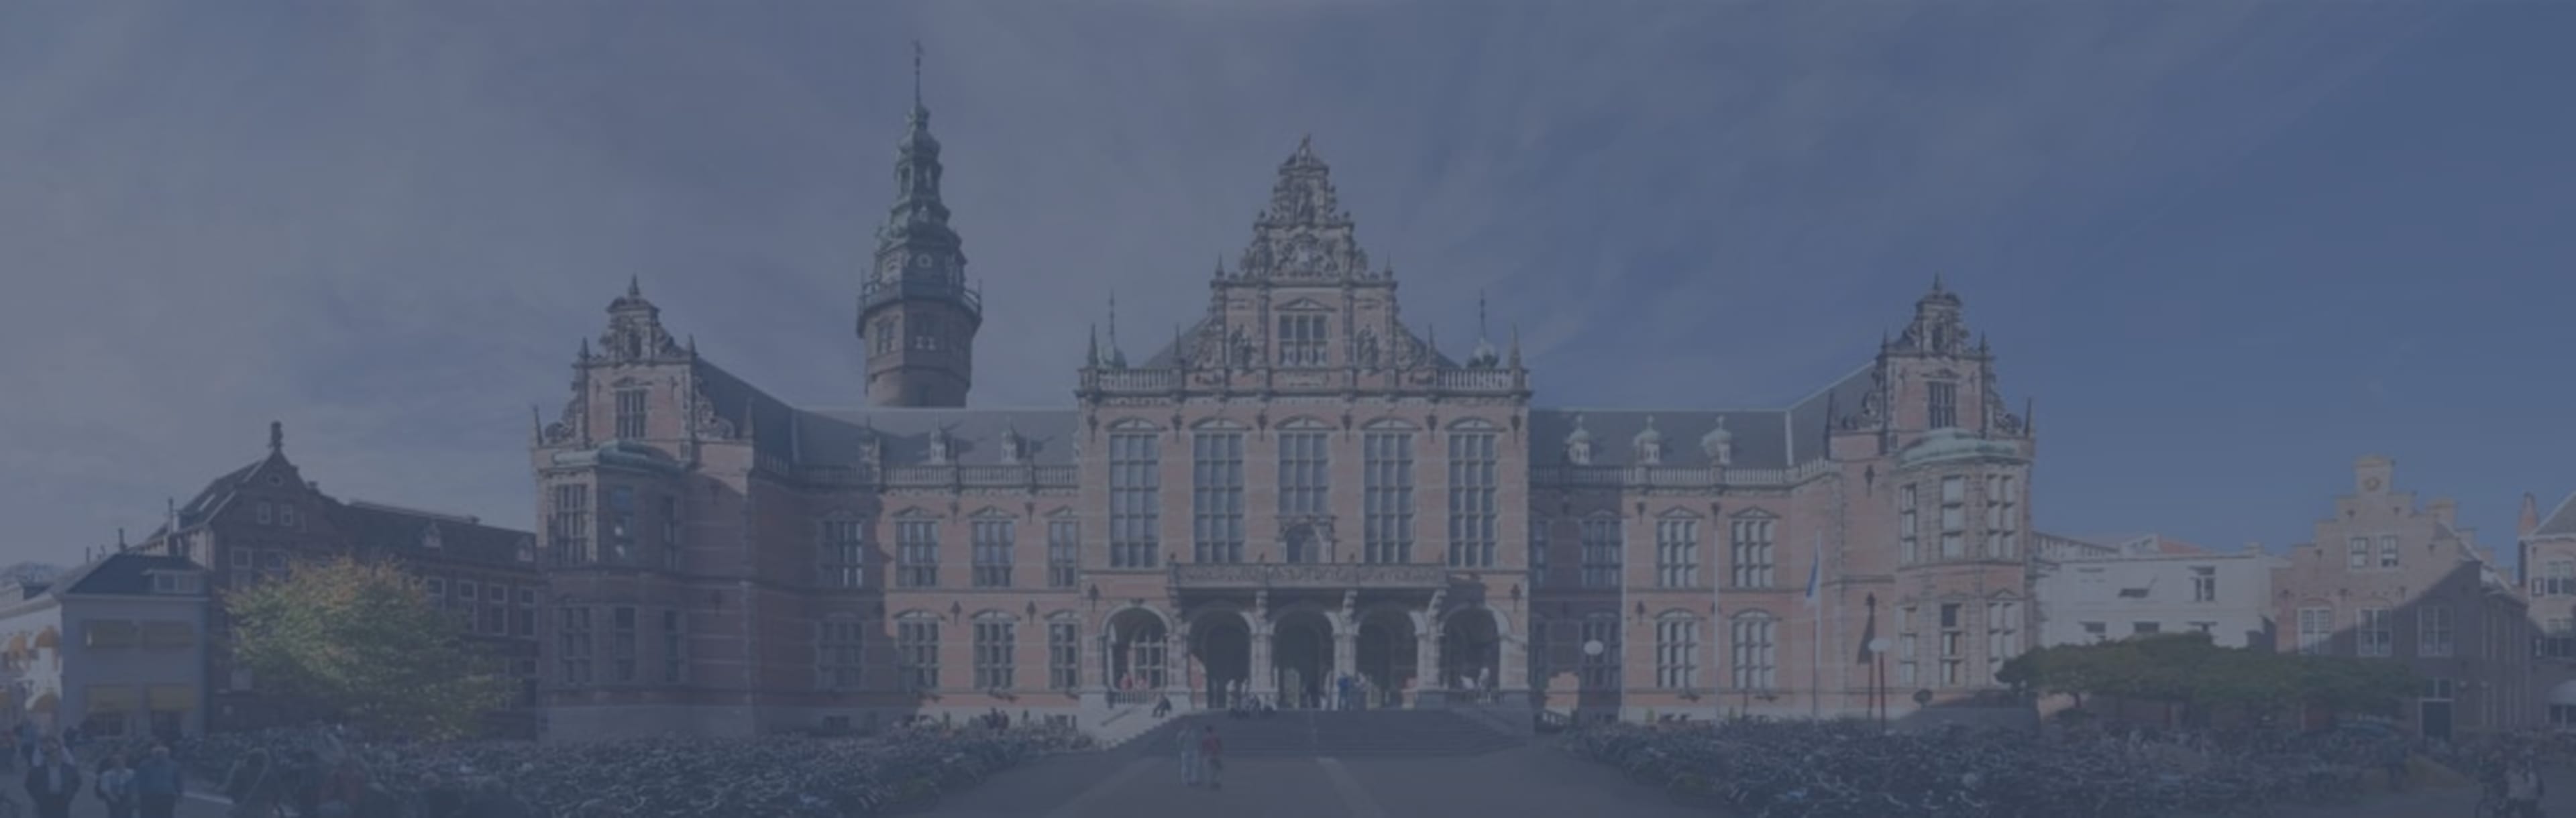 University of Groningen LLM Технологічне право та інновації